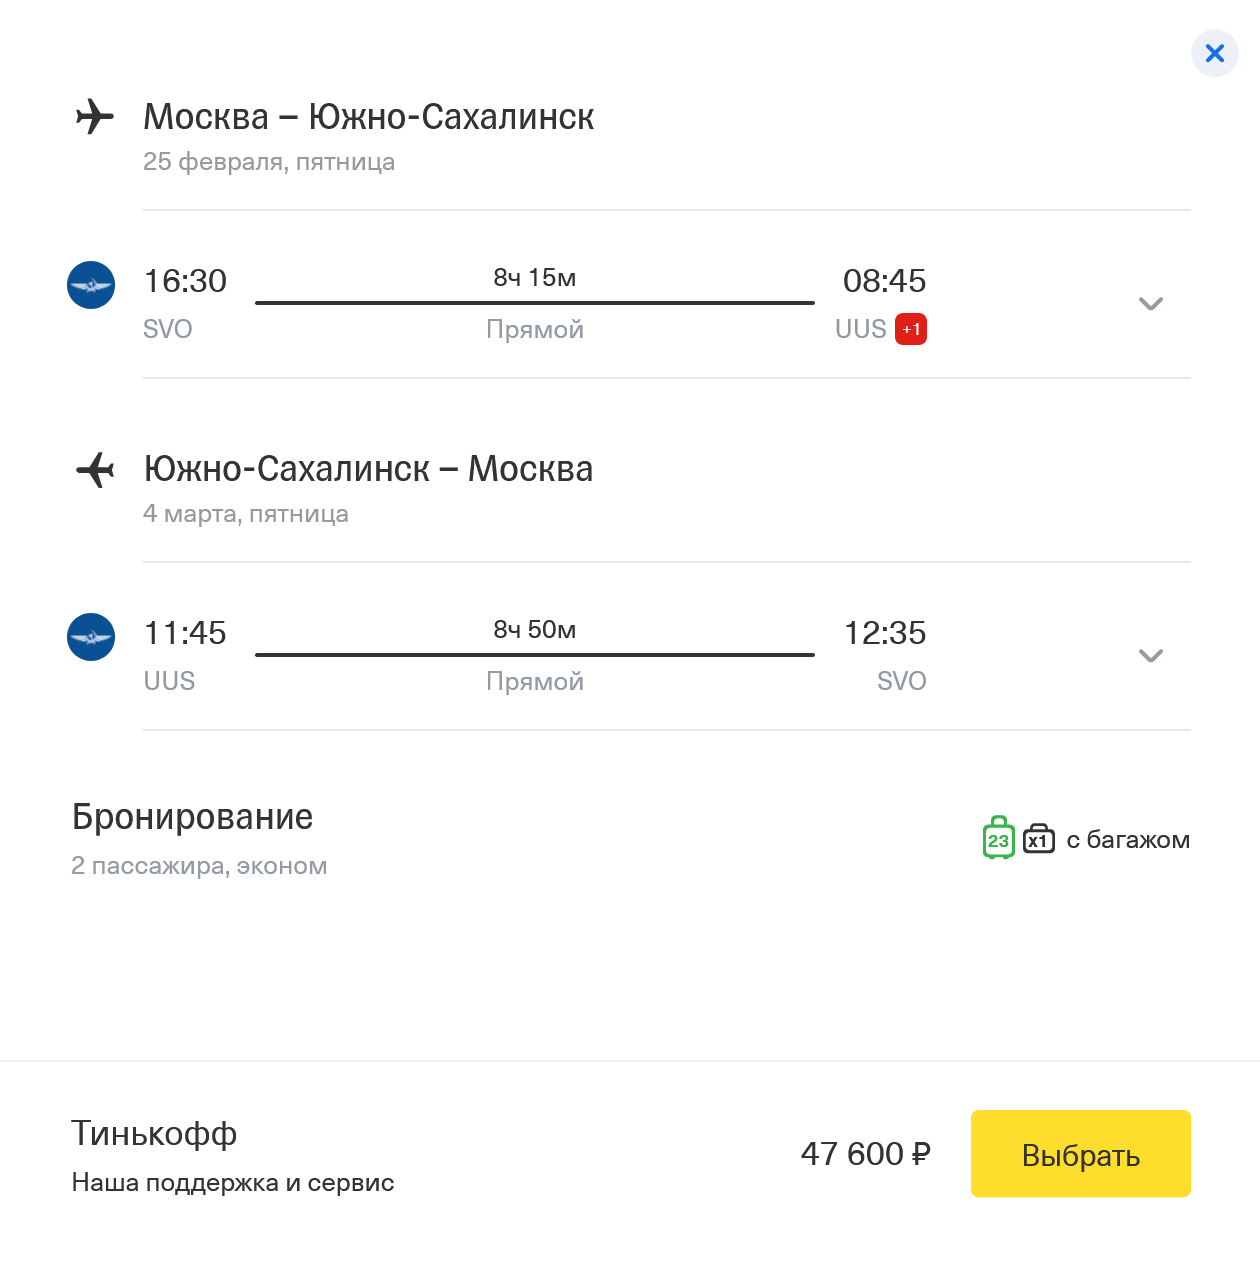 Перелет из Москвы в Южно-Сахалинск занимает больше 8 часов и стоит от 47 600 ₽ на двоих туда⁠-⁠обратно с багажом. Источник: tinkoff.ru